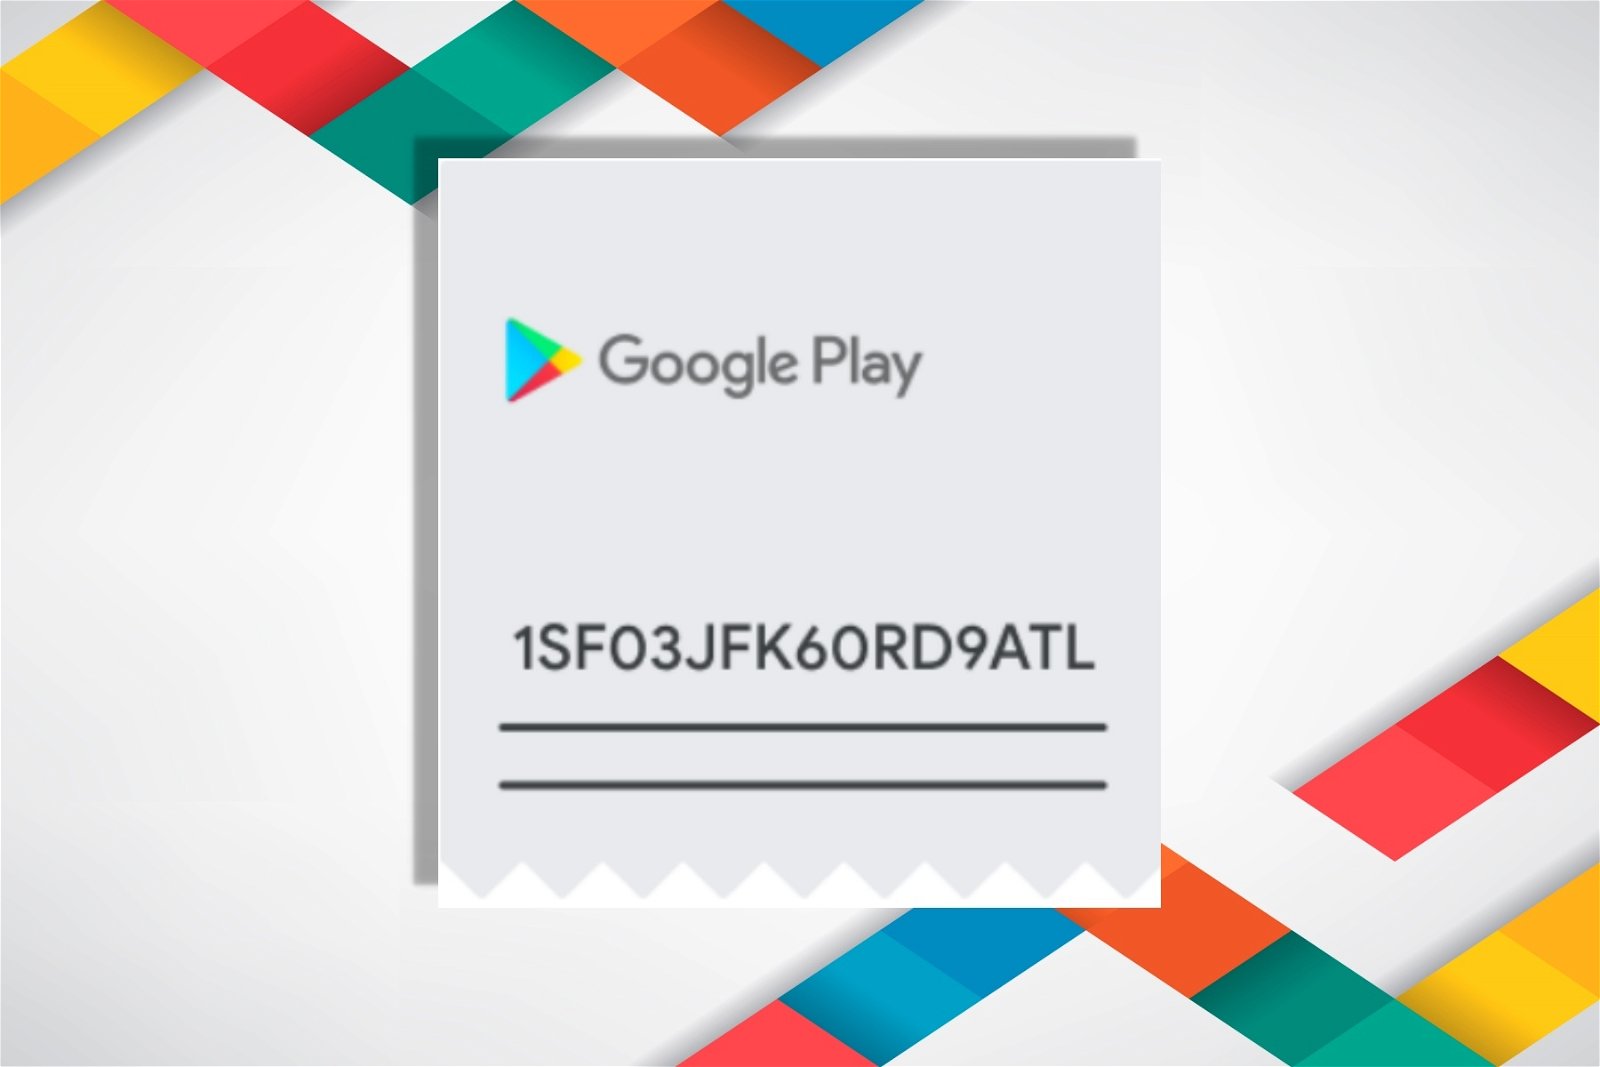 Google Play ofrece códigos promocionales para regalar apps